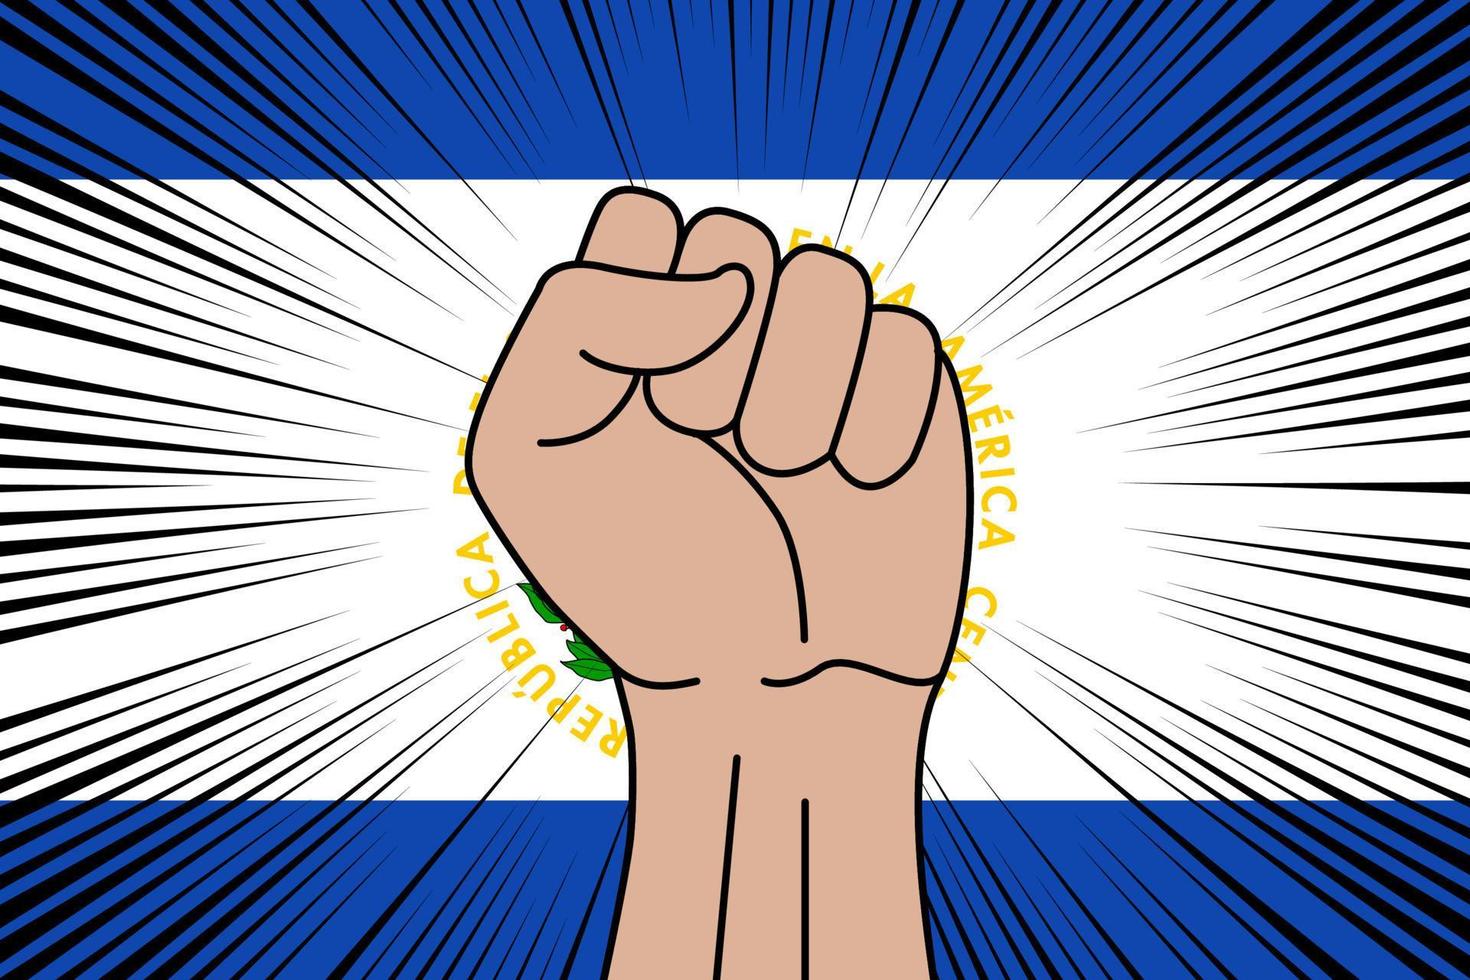 Human fist clenched symbol on flag of El Salvador vector